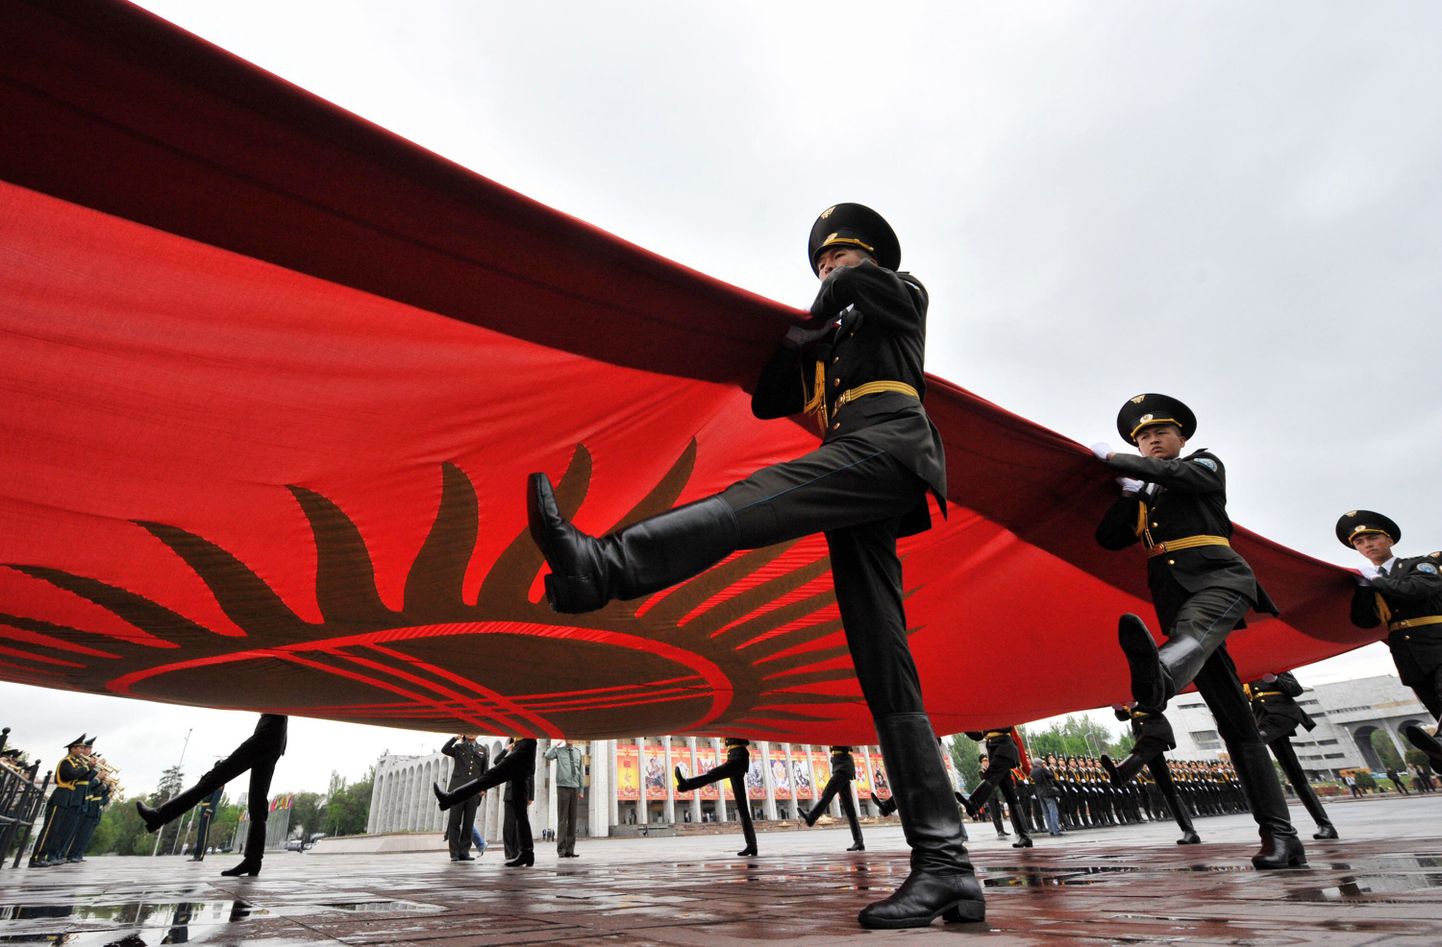 Kõrgõzstani eliitüksuse sõdurid heiskasid Ala-Too väljakule riigilipu 29.aprillil ja seda esimest korda pärast riigipööret. Tavaolukorras toimub see tseremoonia iga päev.